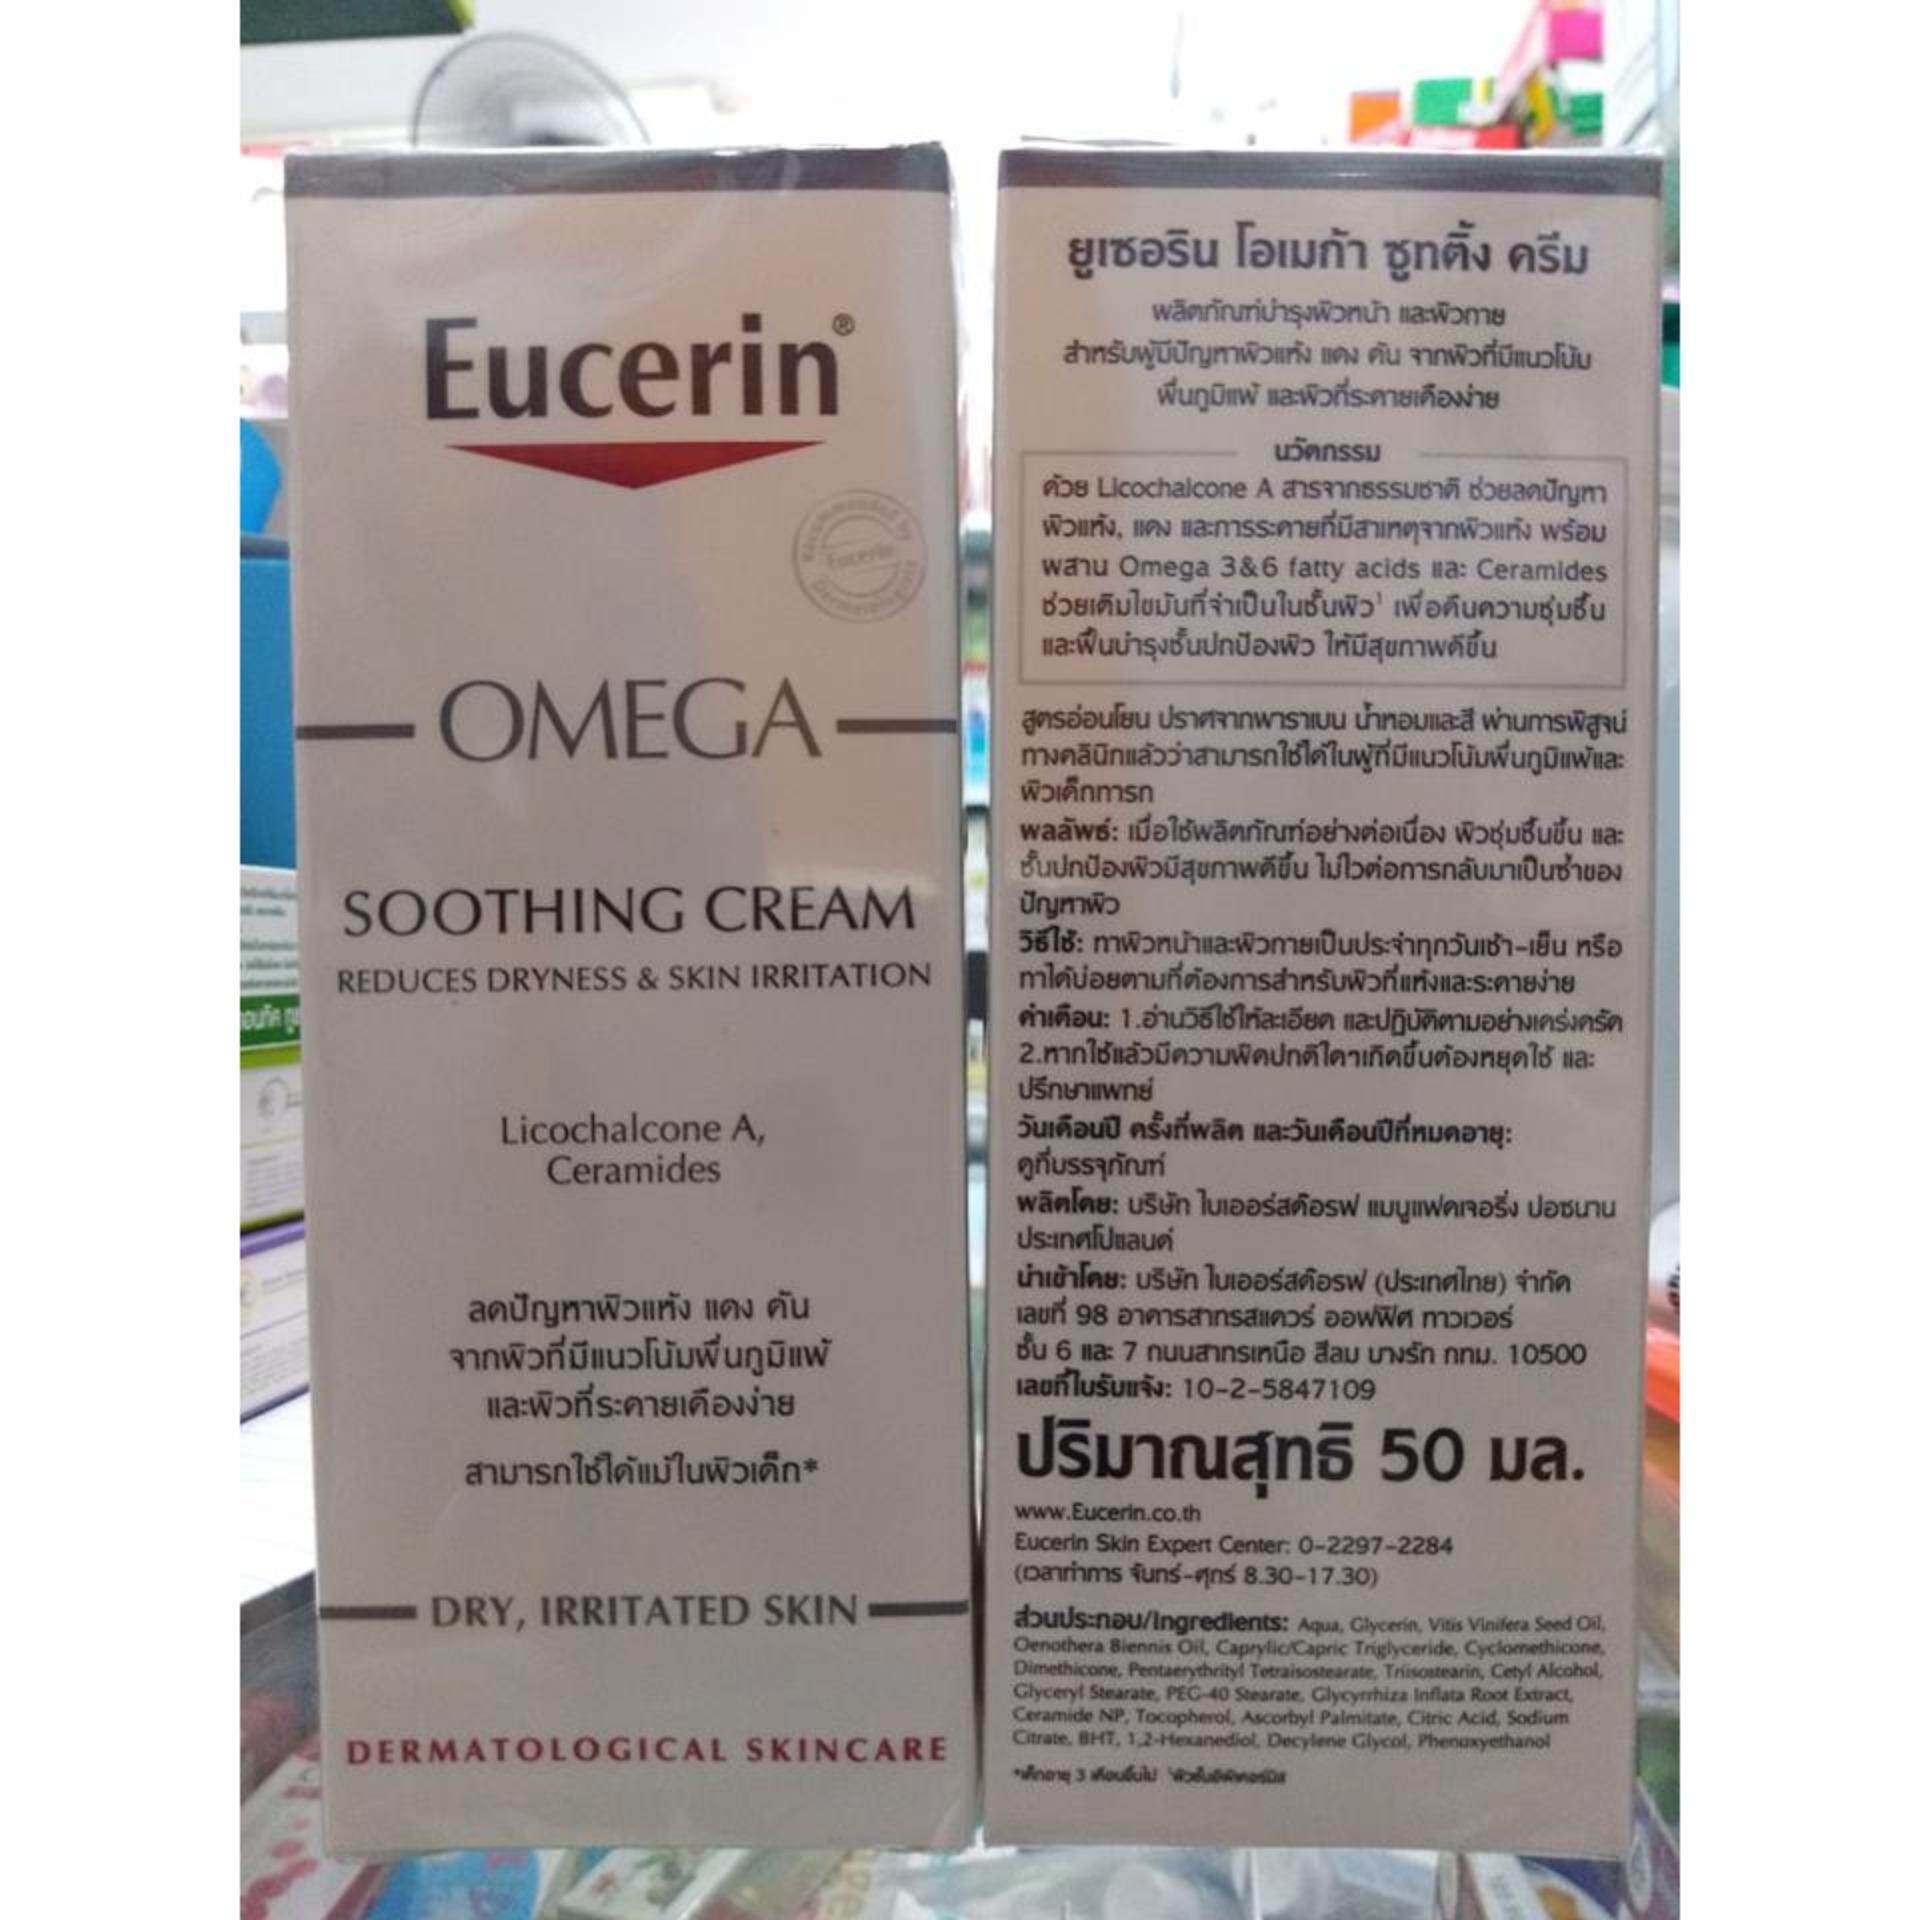 รีวิว Eucerin AtoControl Omega Soothing Cream ผิวอักเสบ แห้ง แดงและคัน ผื่นภูมิแพ้ ceremide +LICOCHALCONE A 50 ml.